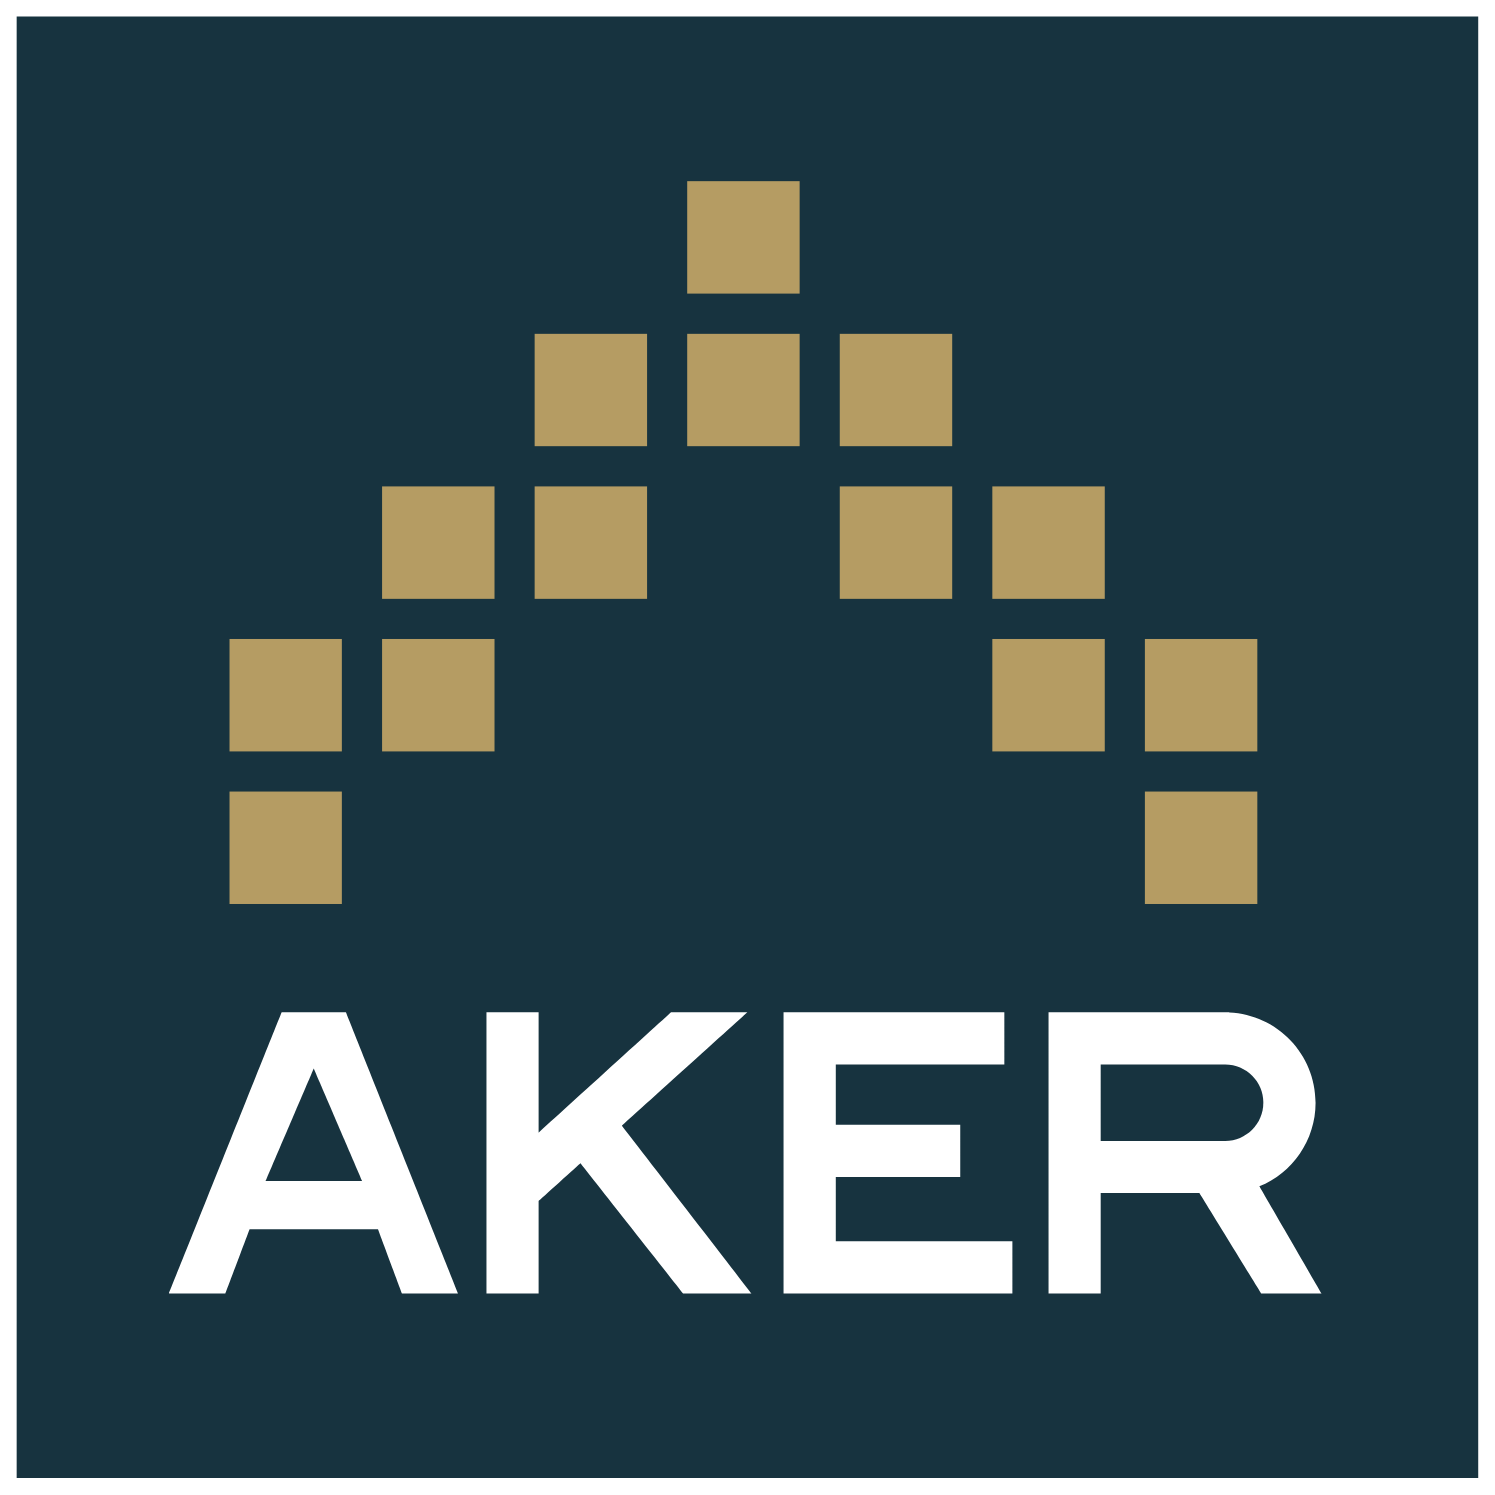 Aker ASA logo (transparent PNG)